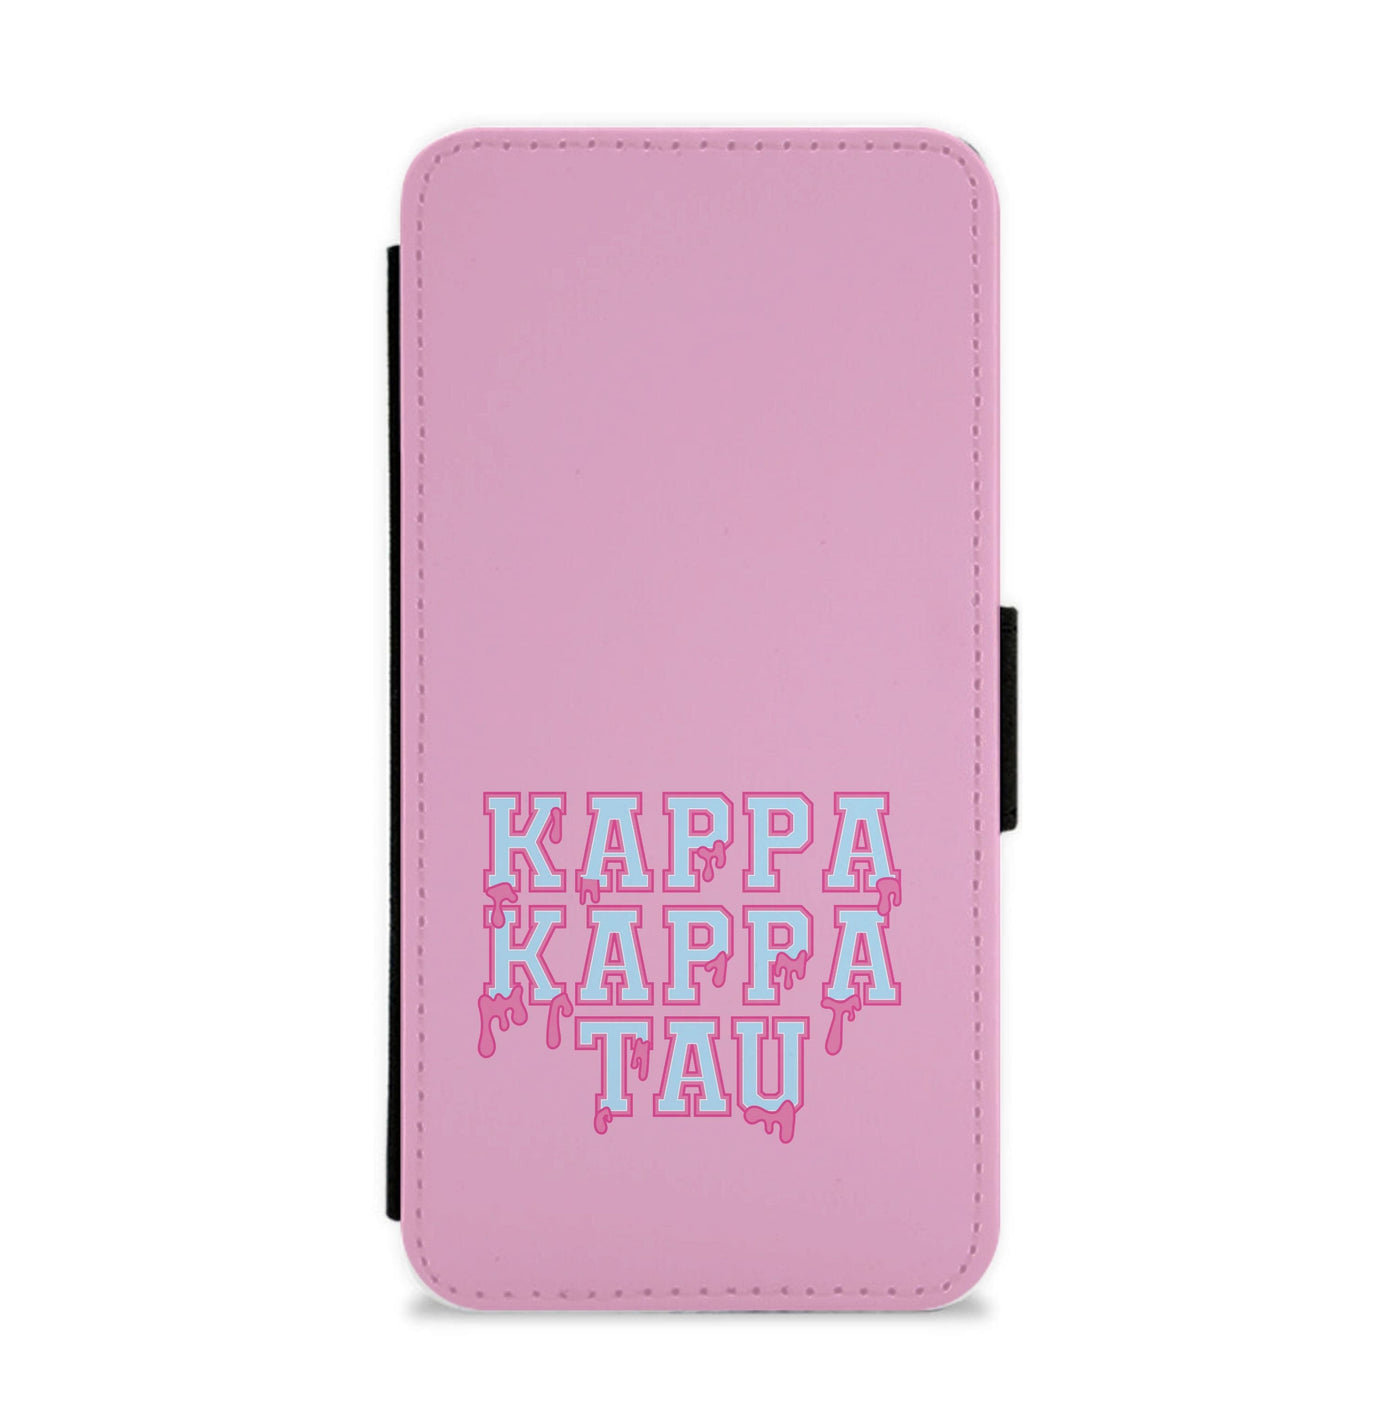 Kappa Kappa Tau - Scream Queens Flip / Wallet Phone Case